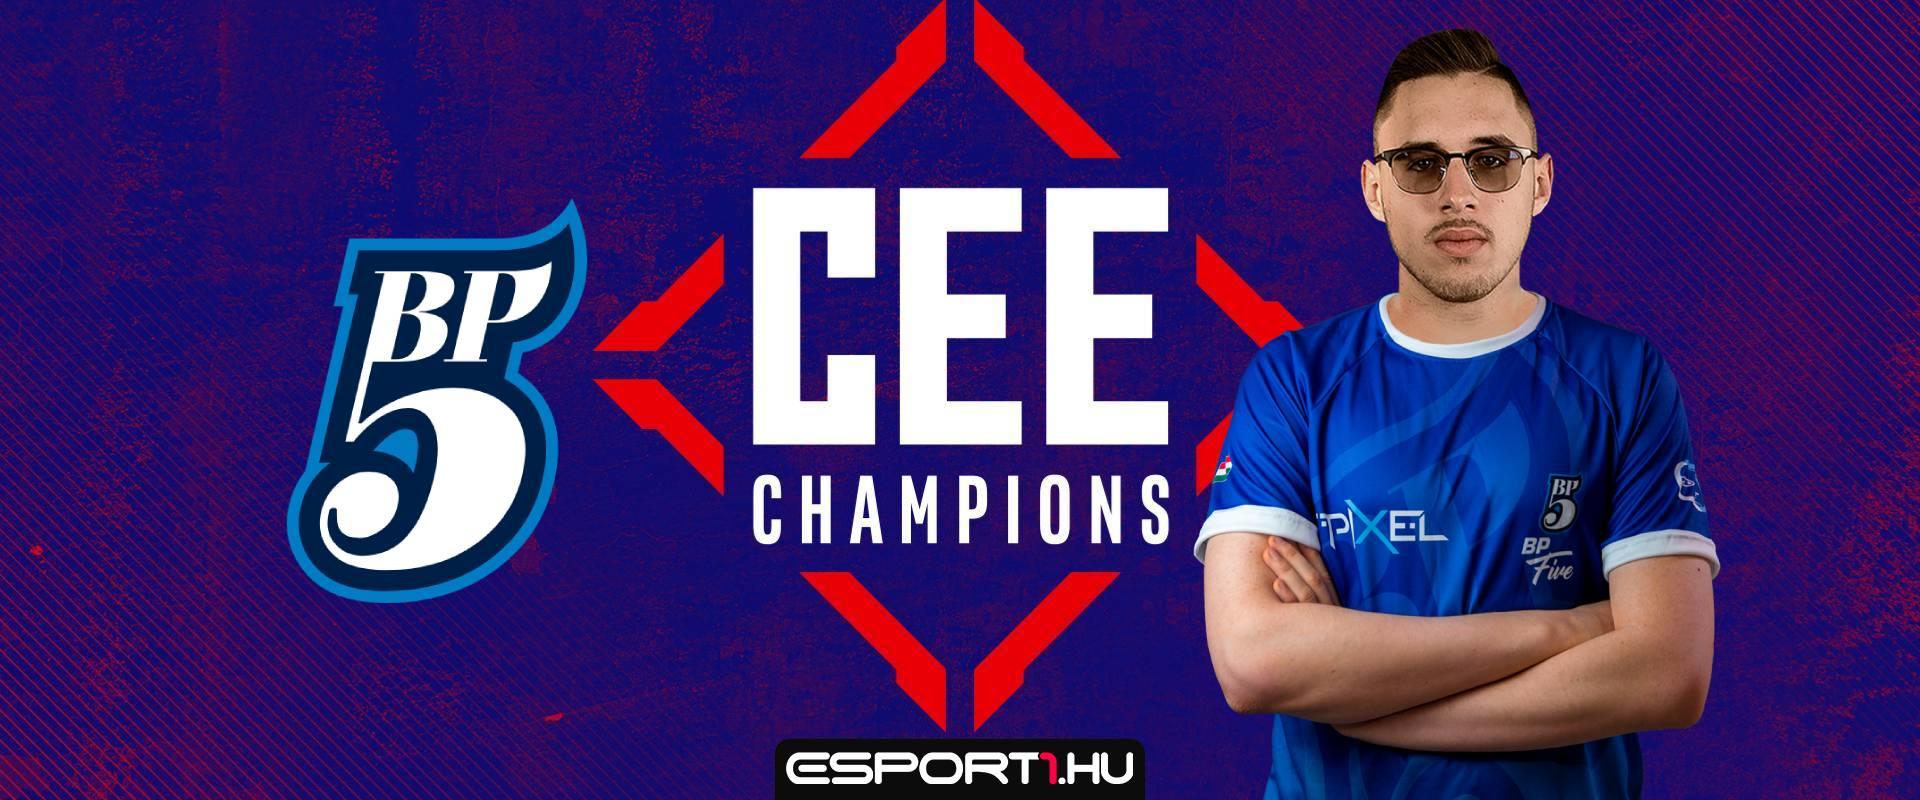 CEE Champions: Simán nyert a BP5, gejmzilláék ellen játszanak legközelebb